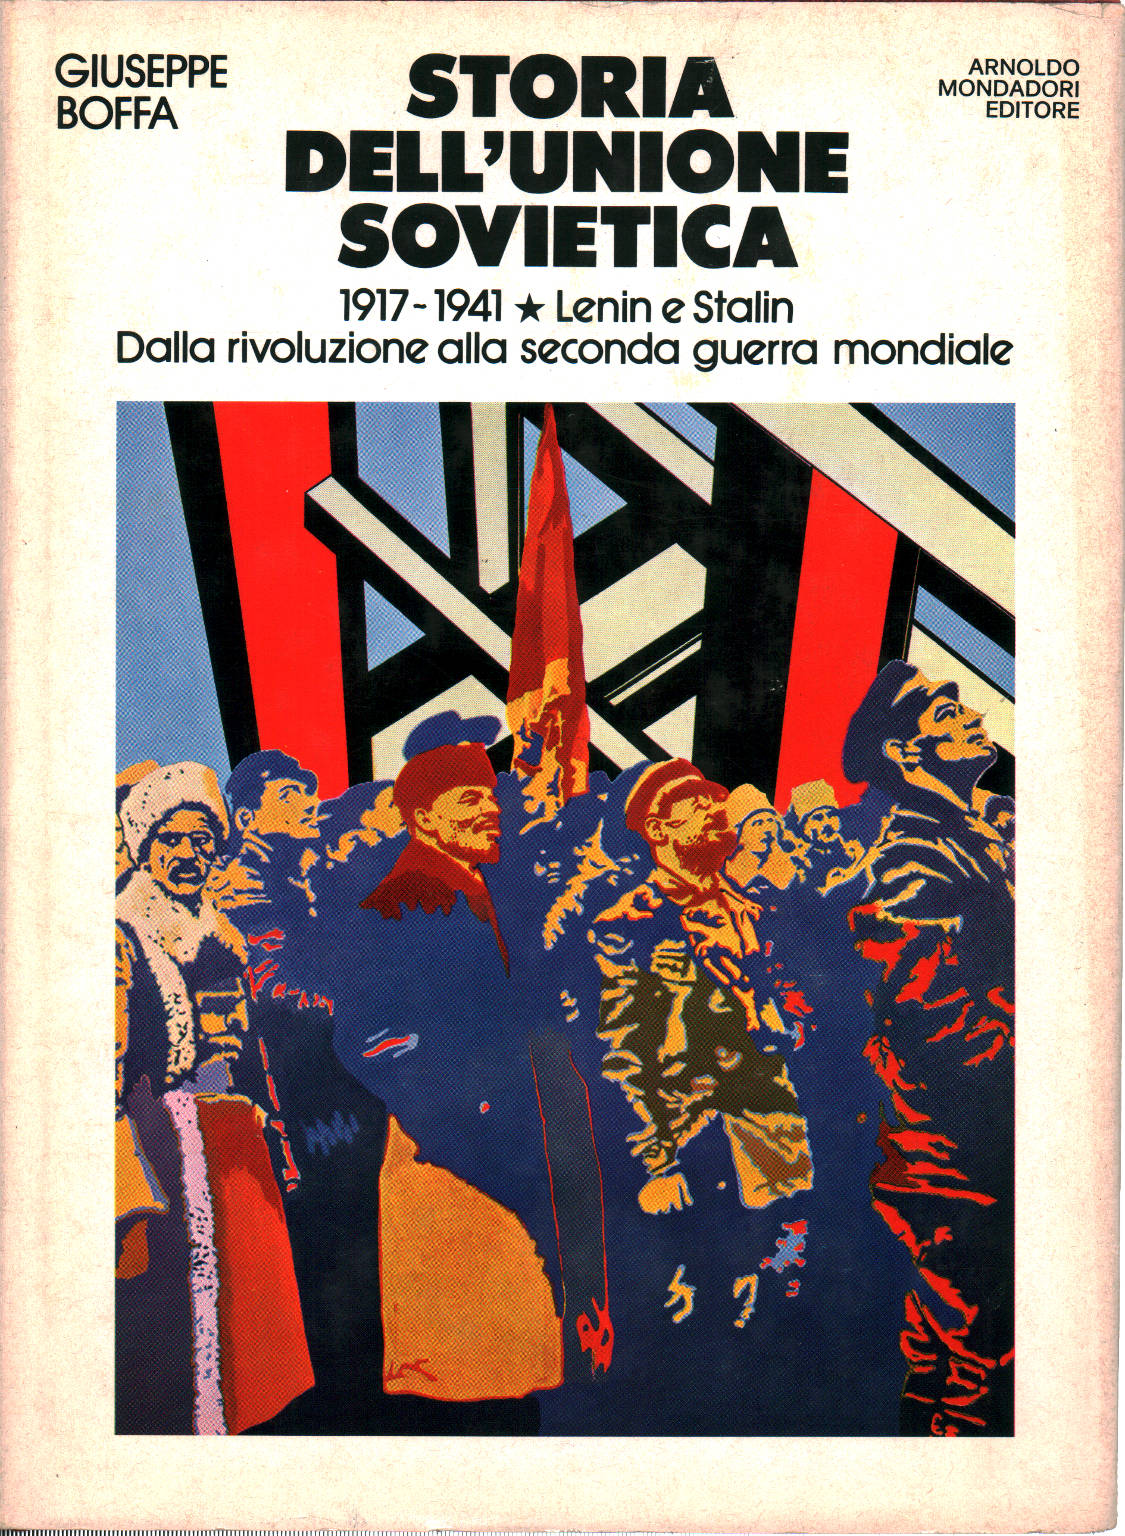 Storia dell'Unione Sovietica Volume primo, Giuseppe Boffa